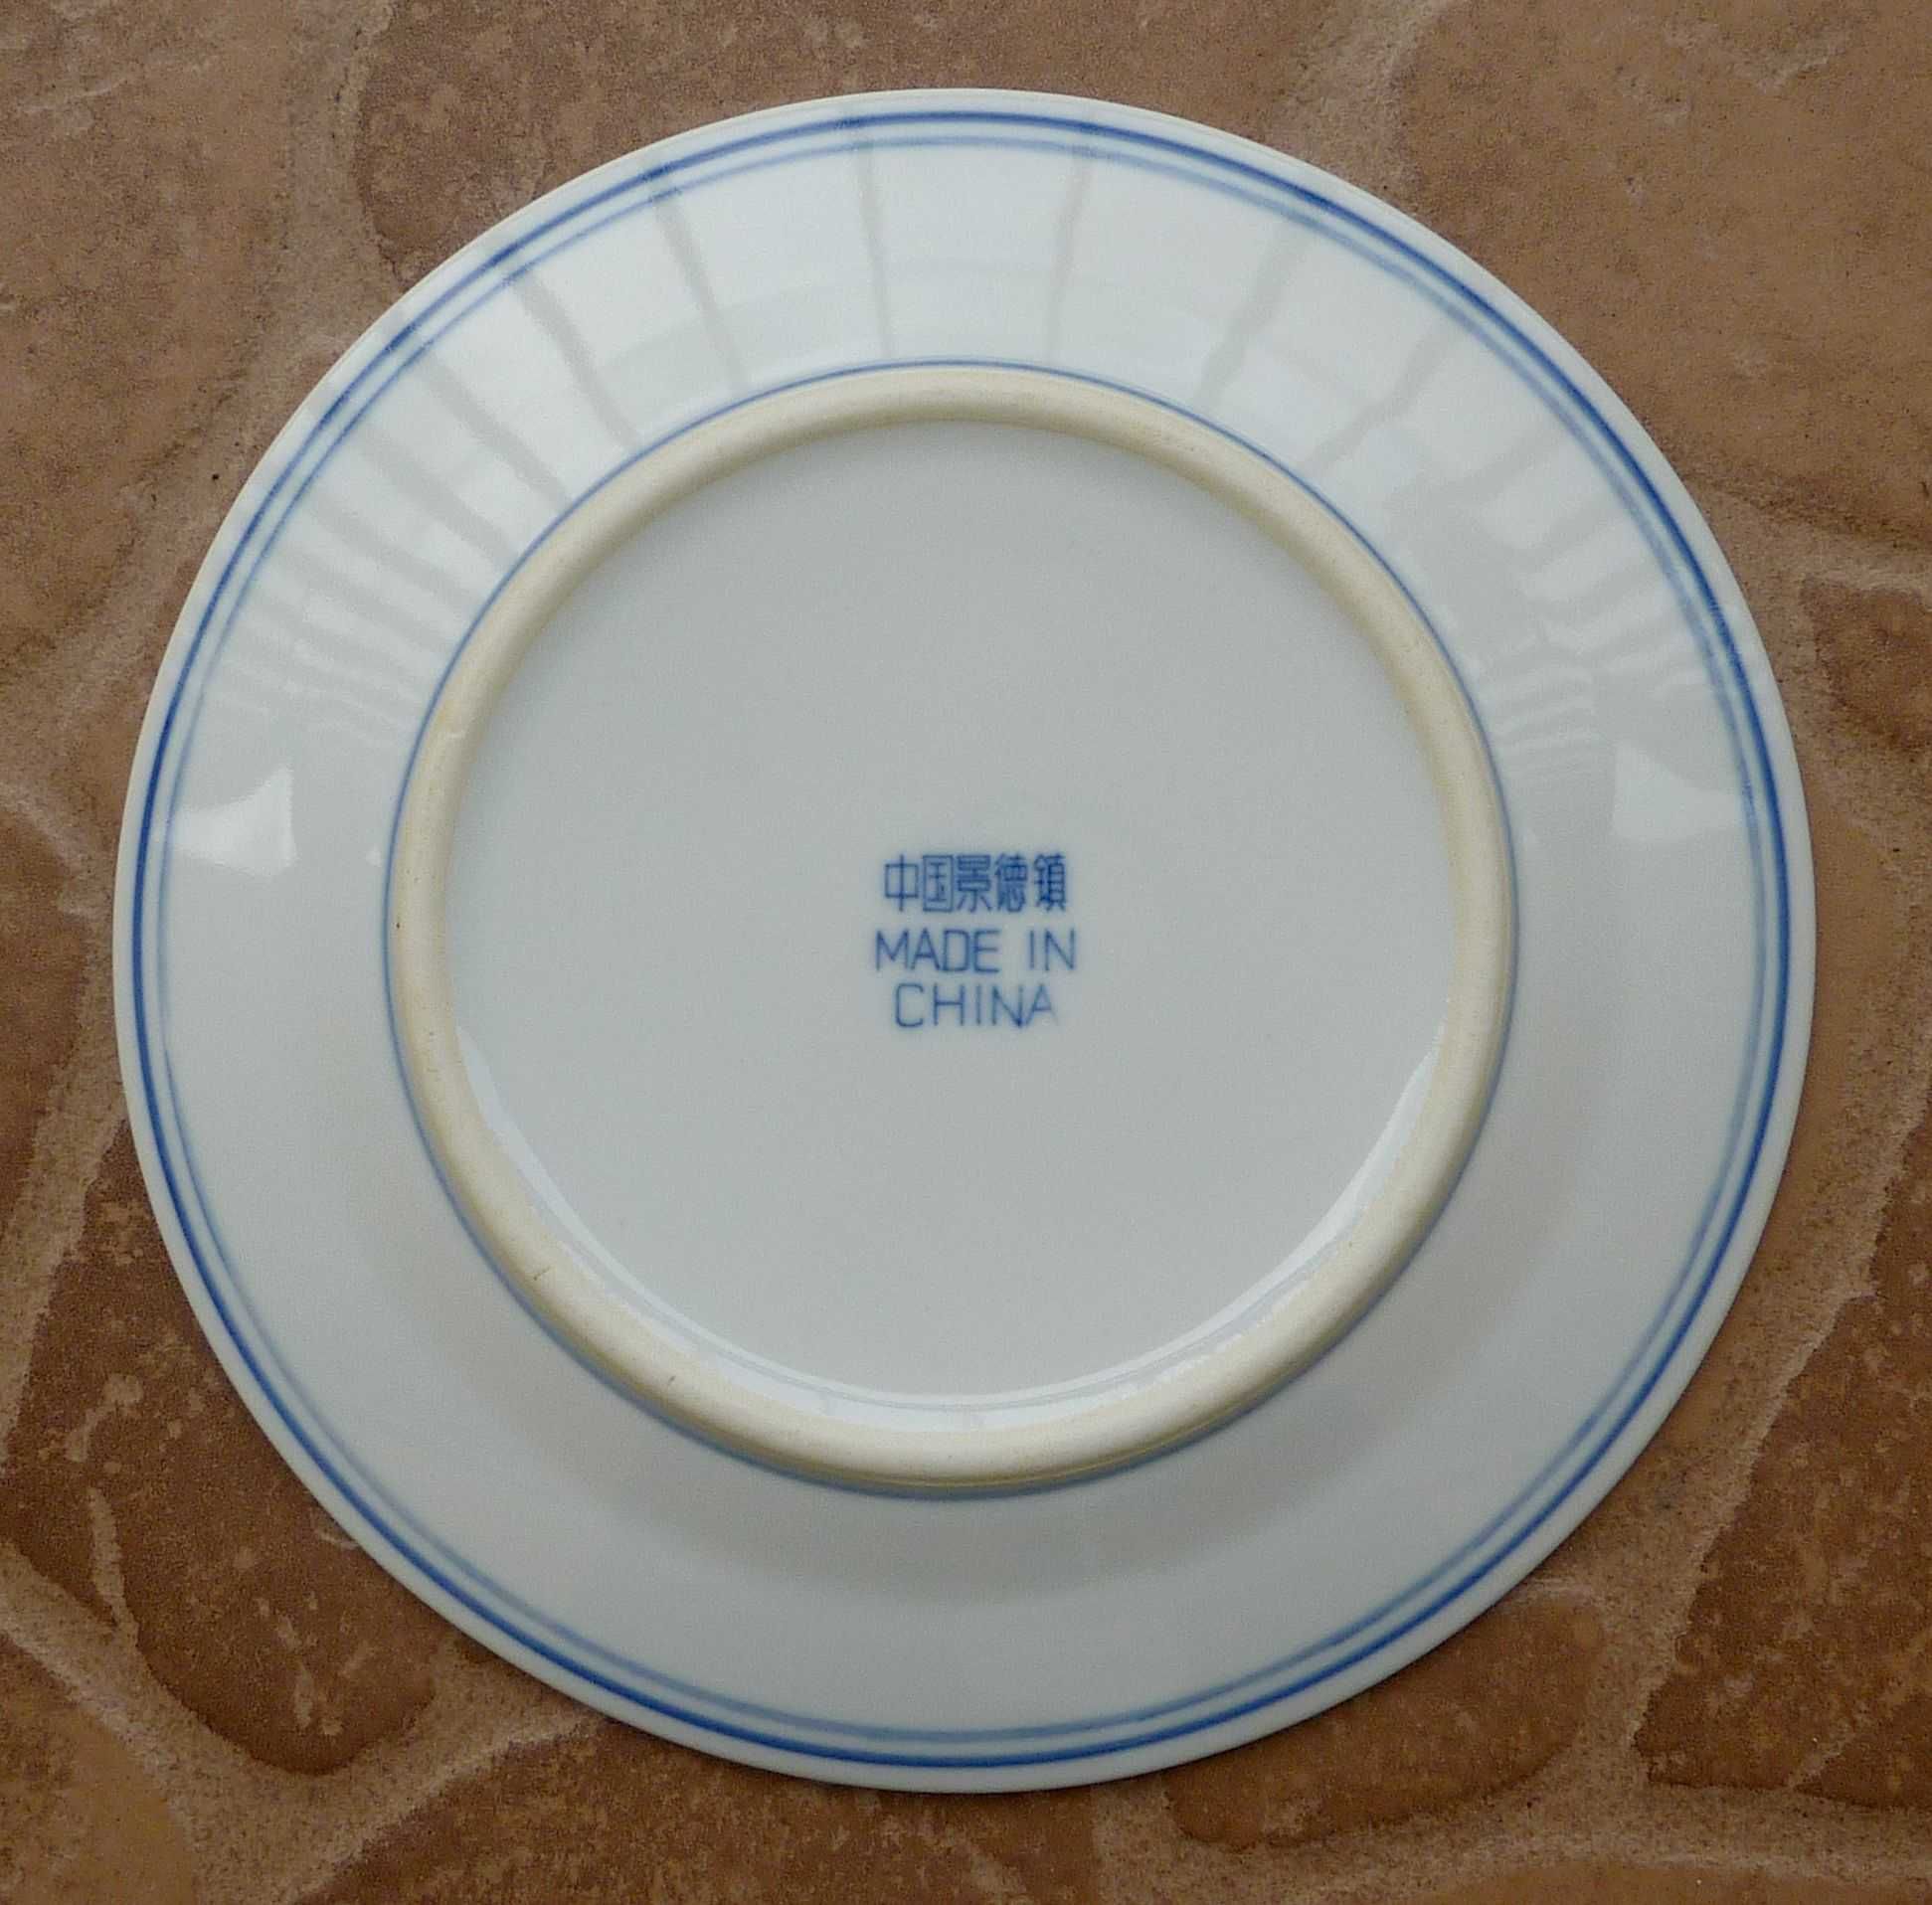 chiński talerz - biały i niebieski - porcelana eksportowa Jingdezhen